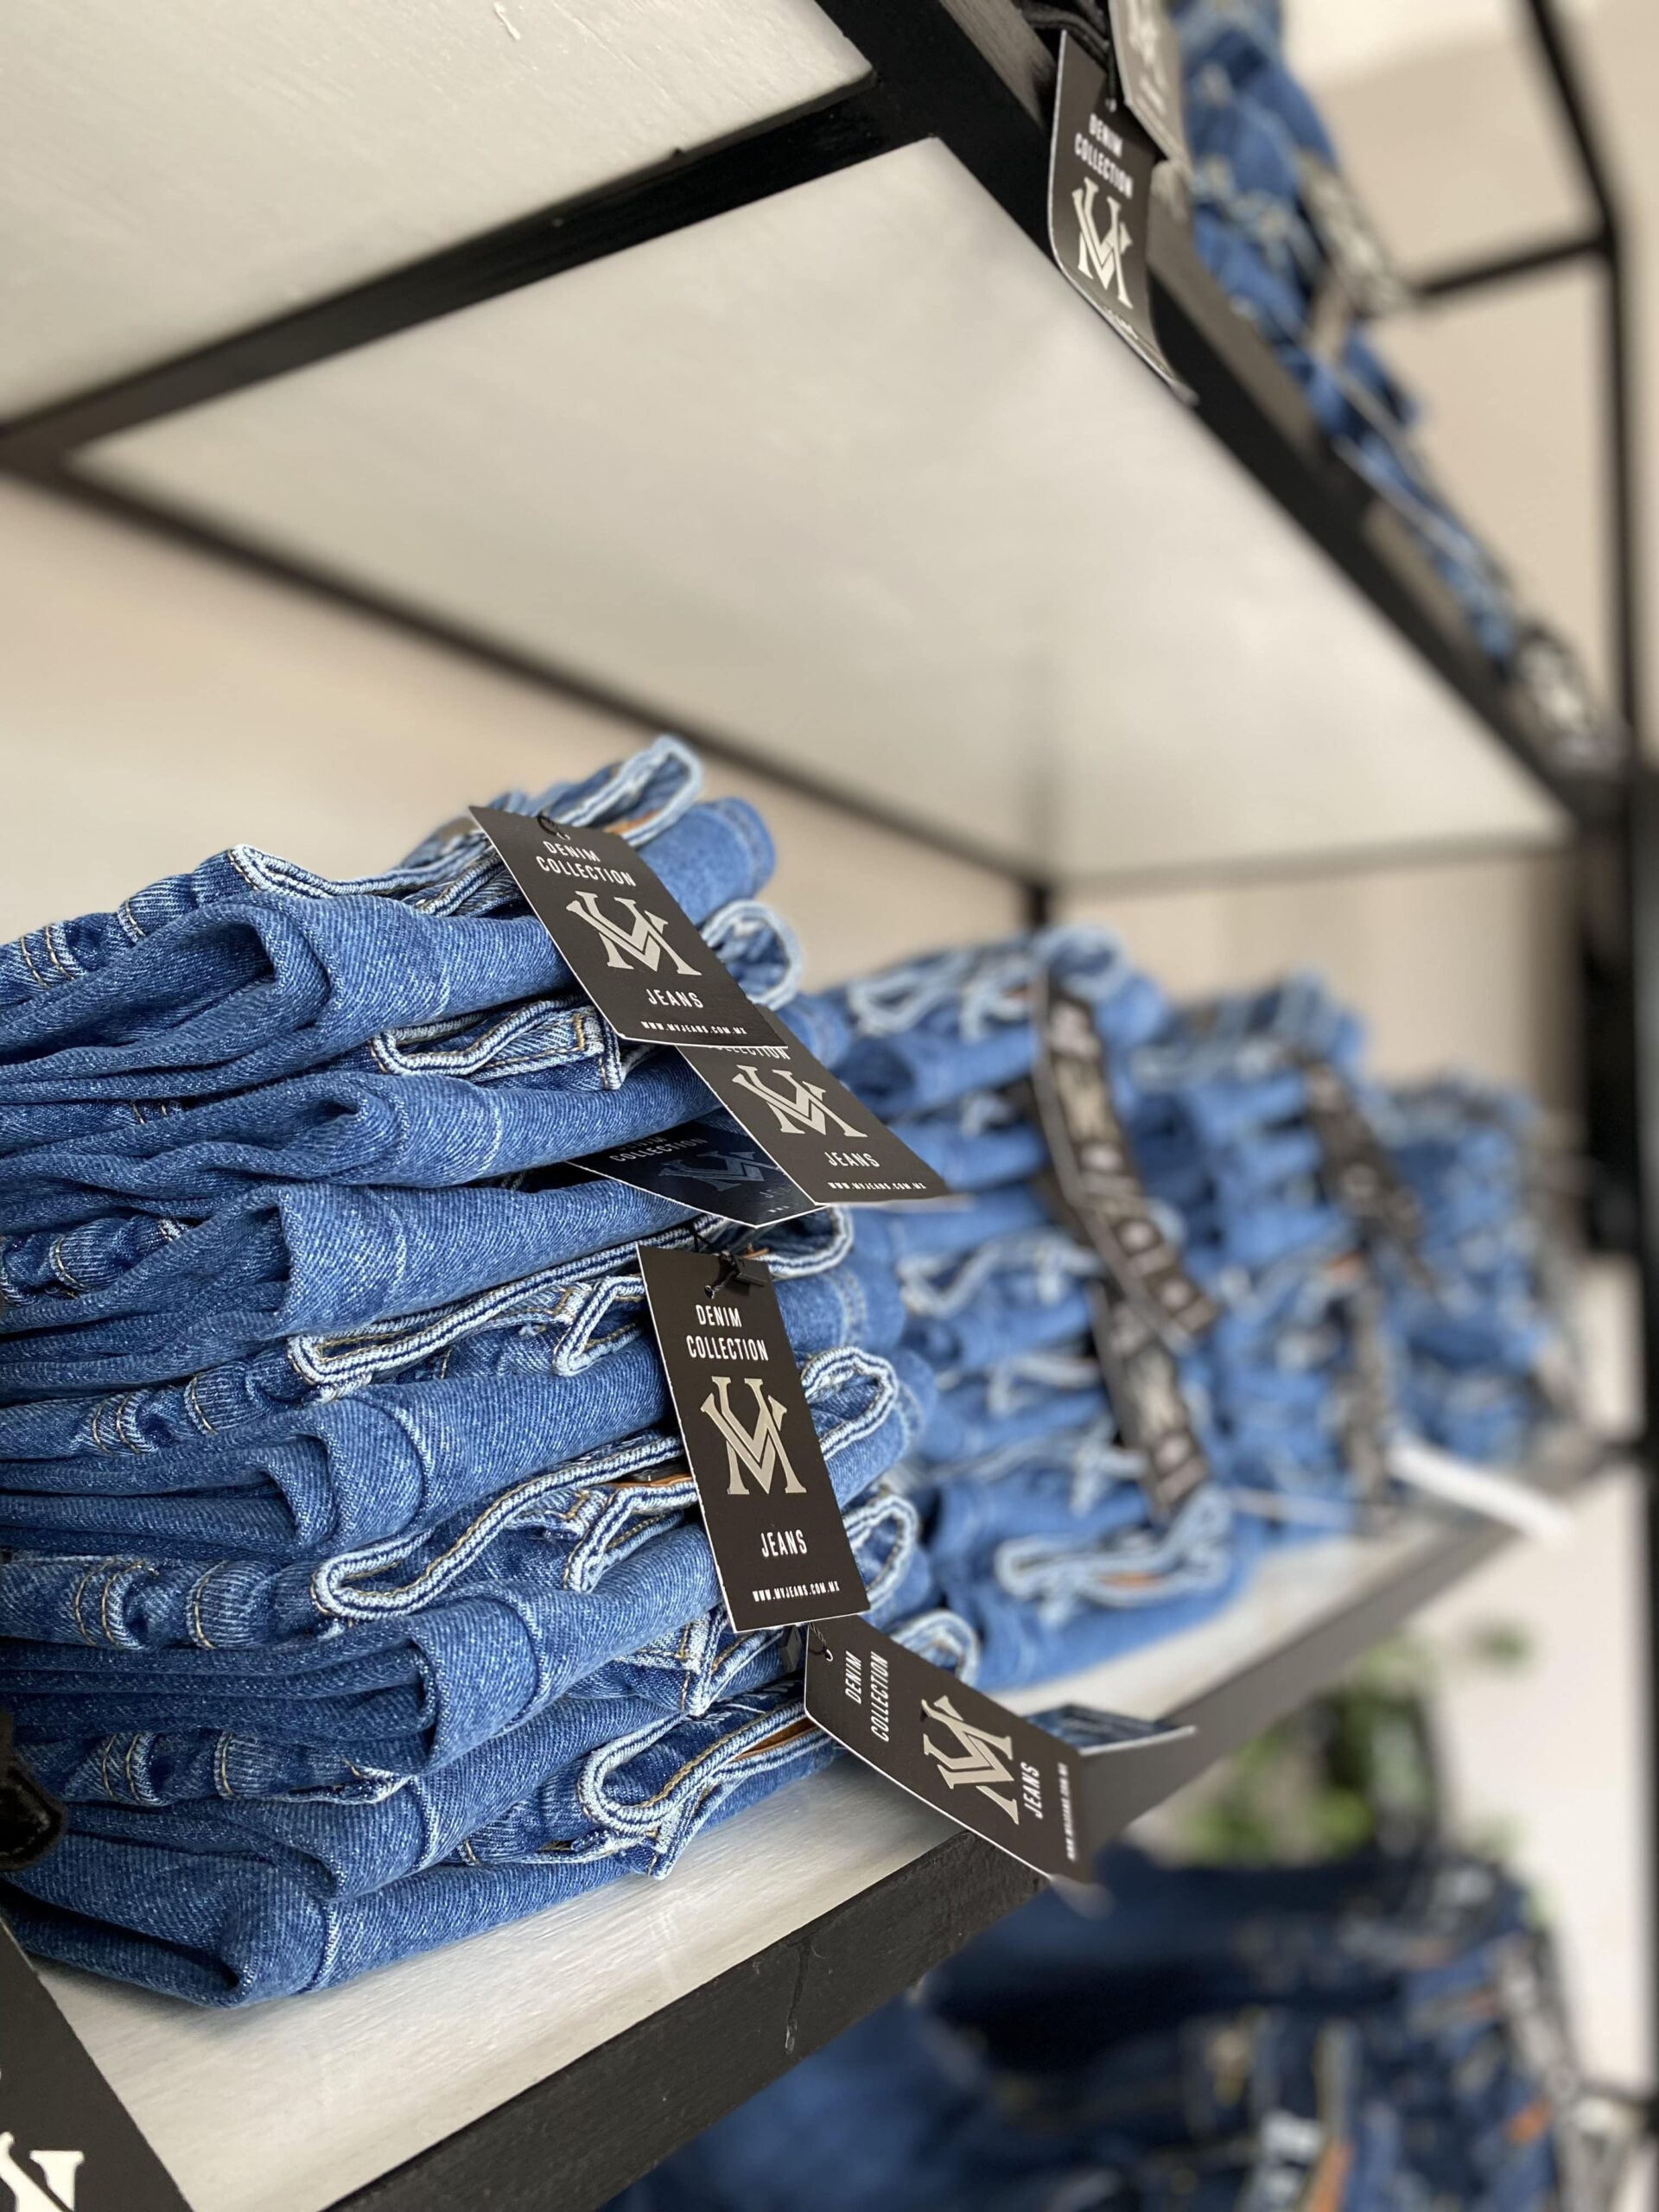 La exclusiva marca MV Jeans abre su nuevo Showroom en Villahermosa, Tabasco  Con una colección muy variada, tanto para hombres como para mujeres, la exclusiva marca MV Jeans se renueva en el mercado mexicano e inaugura su nuevo showroom en la Ciudad de Villahermosa, Tabasco.  https://larevistadelsureste.com